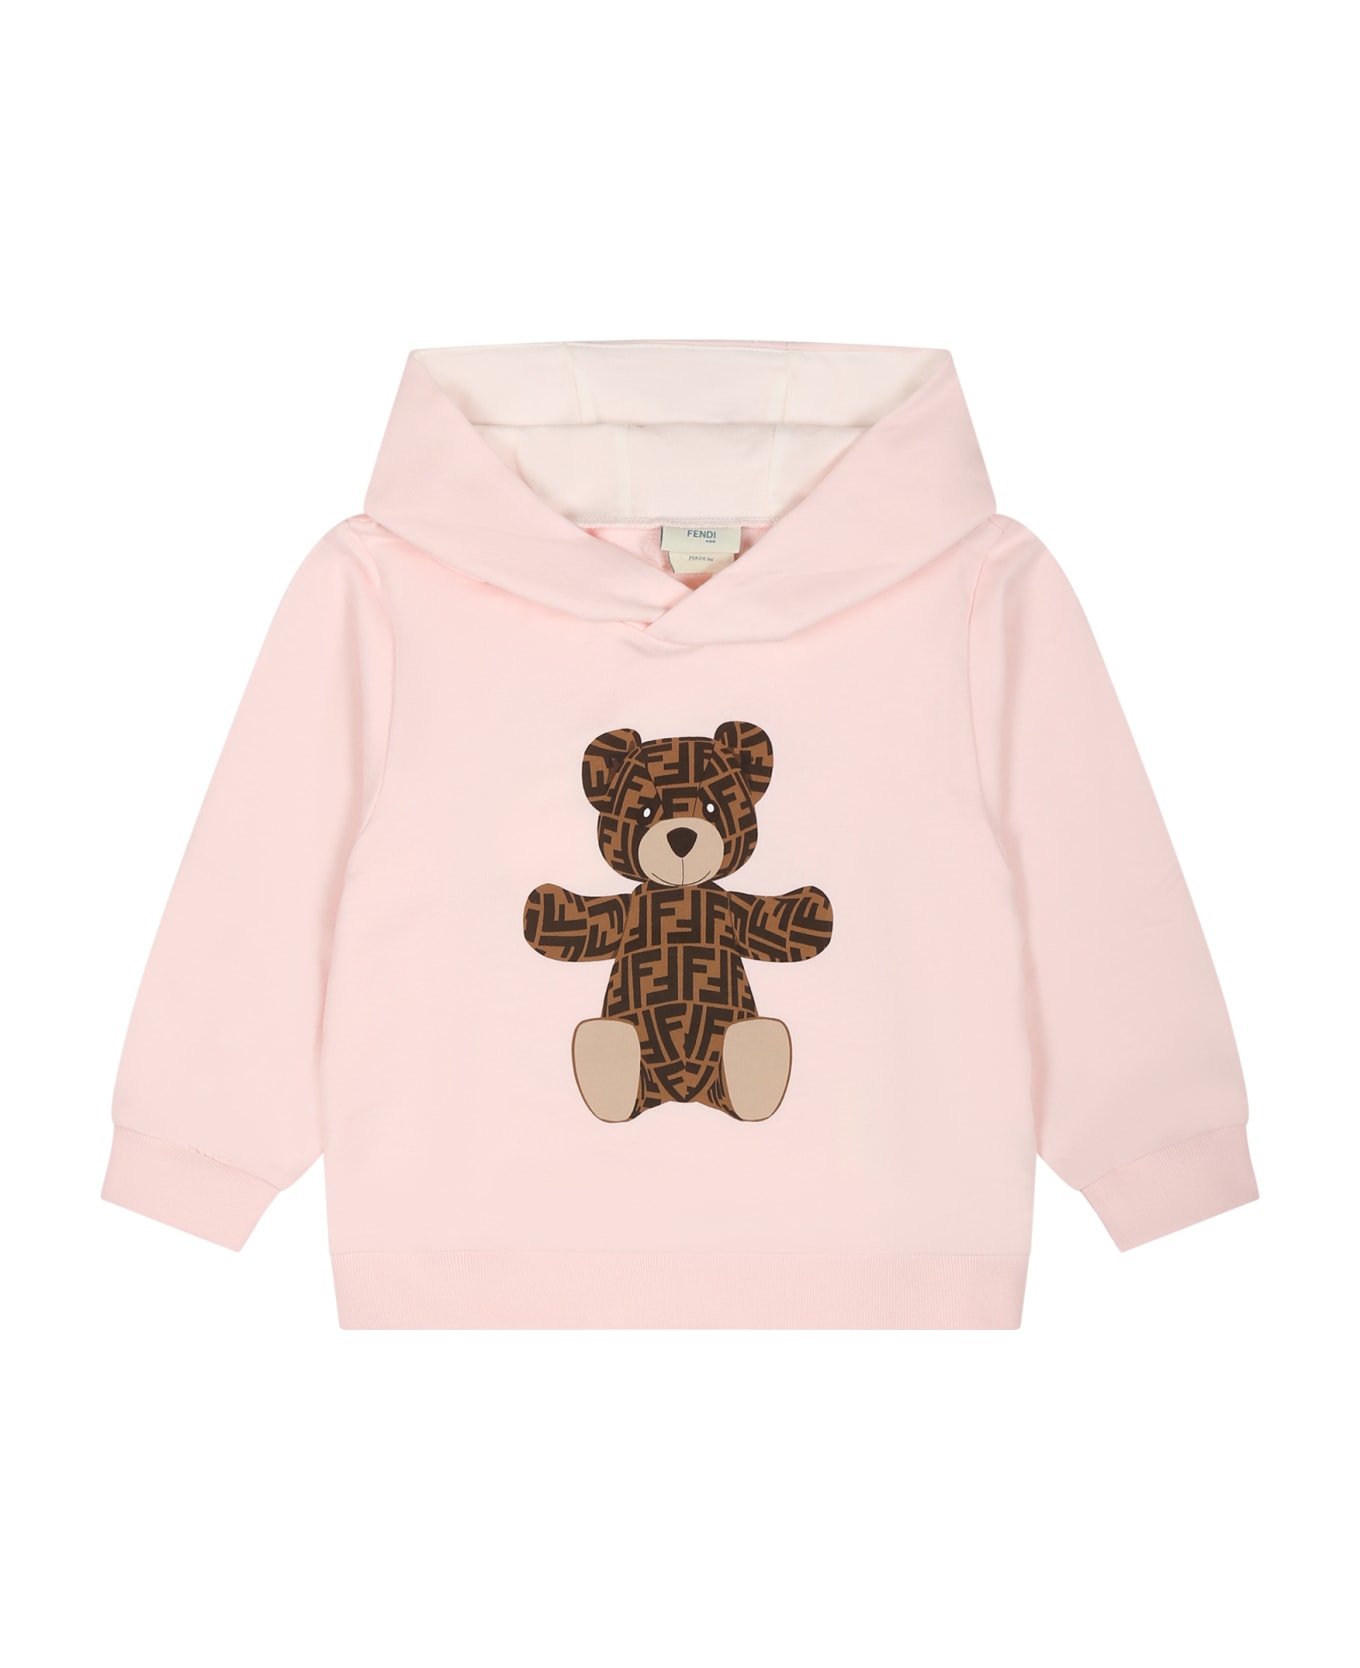 Fendi Pink Sweatshirt For Baby Girl With Bear - Pink